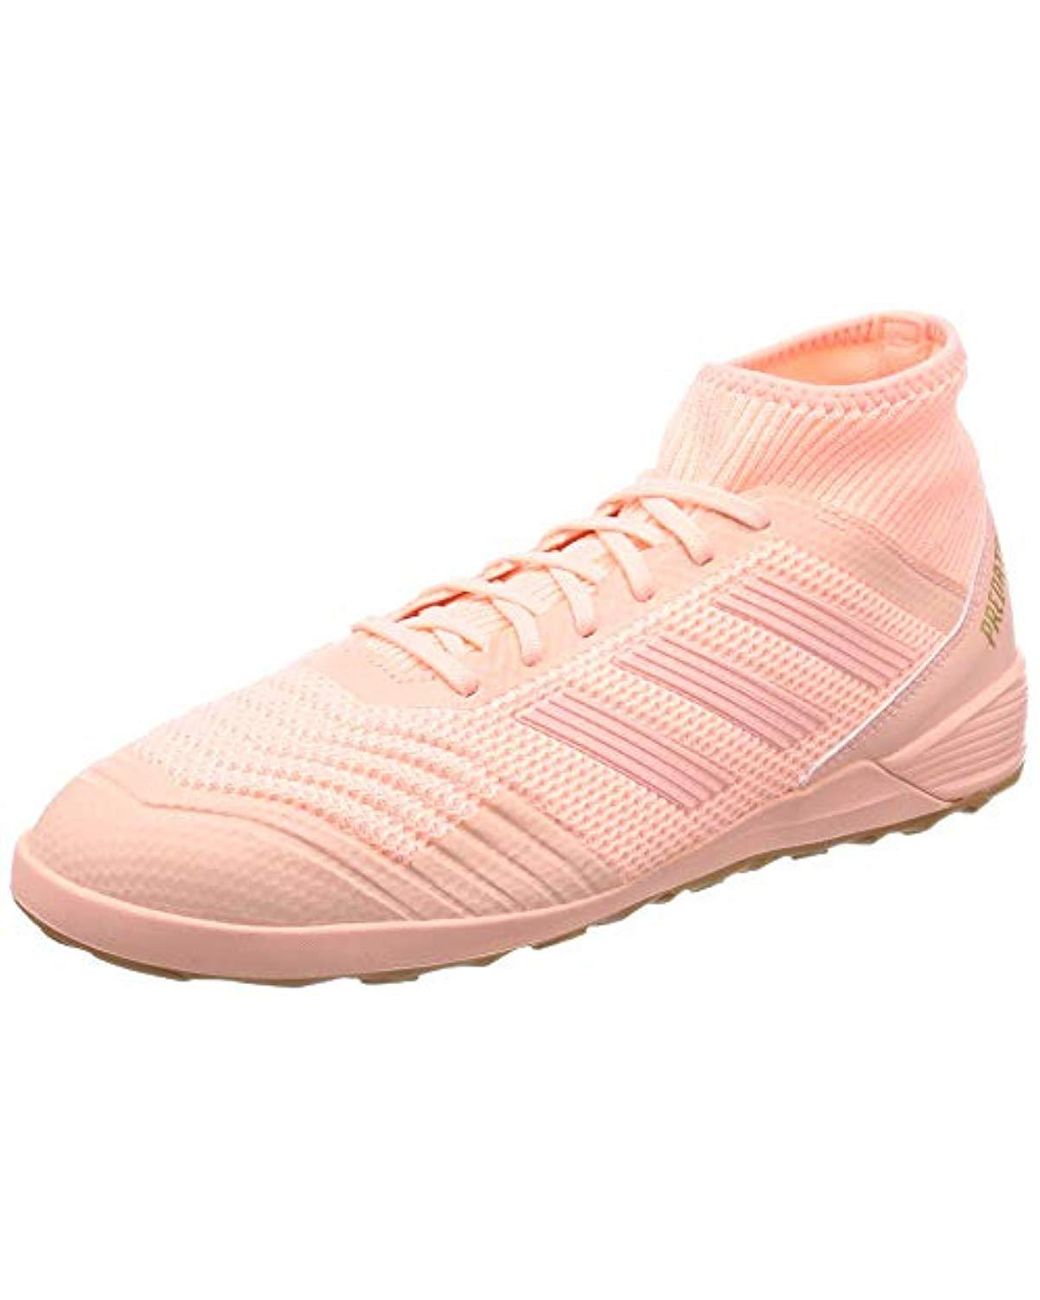 Predator Tango 18.3 In, Zapatillas fútbol para Hombre adidas de hombre de color Rosa | Lyst